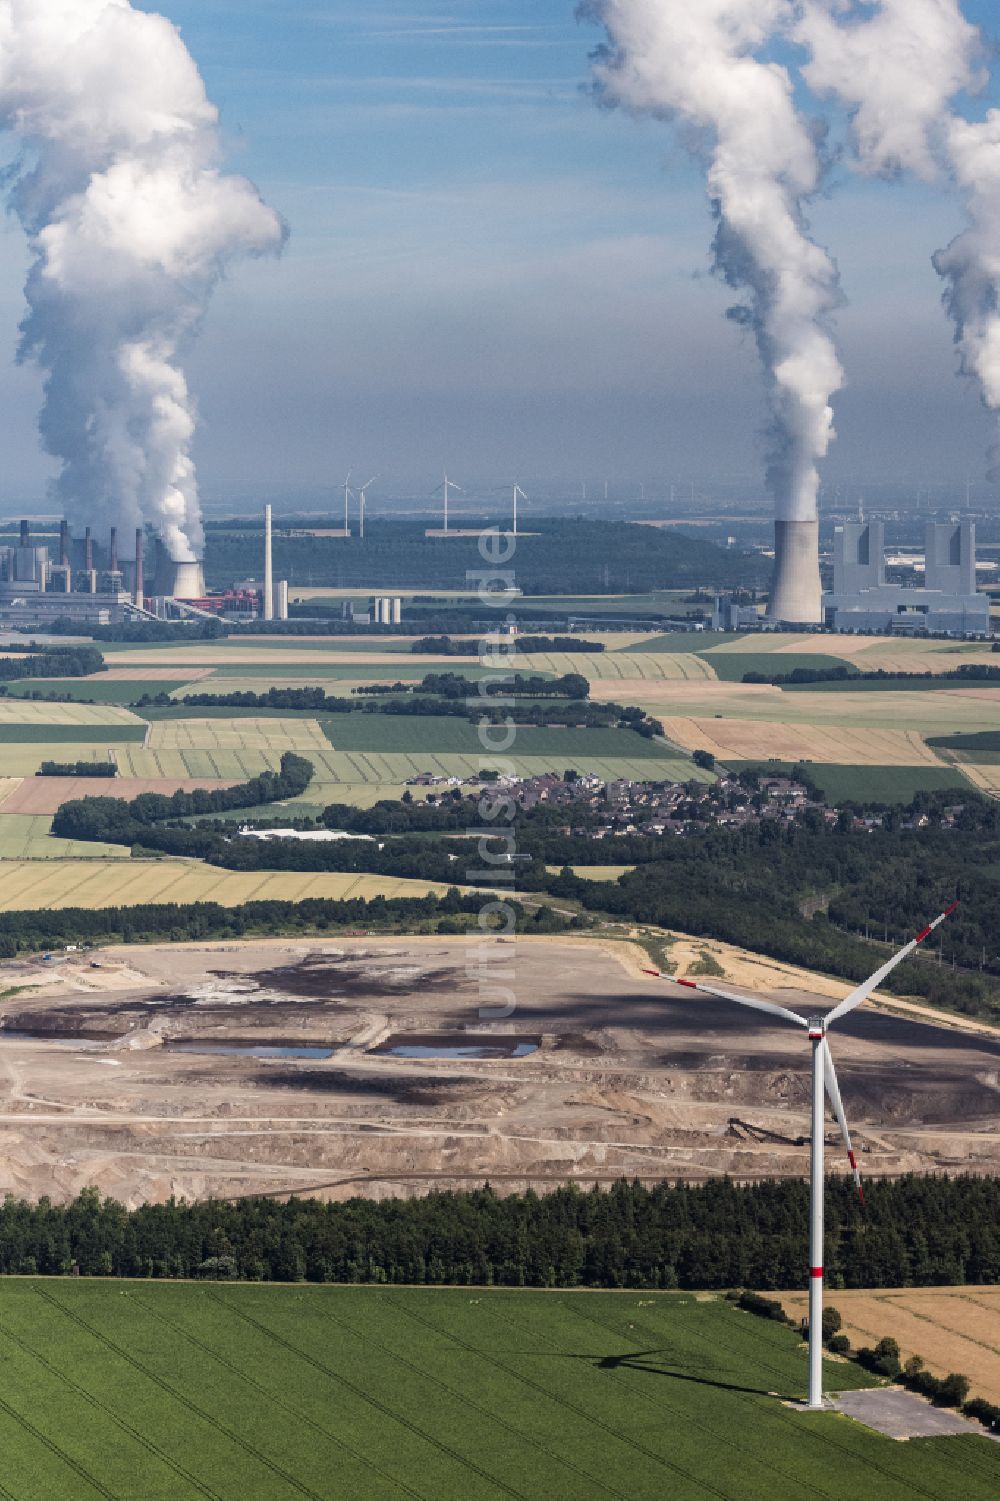 Niederaußem von oben - Kohle- Kraftwerksanlagen des RWE Power AG Kraftwerk Niederaußem in Bergheim im Bundesland Nordrhein-Westfalen, Deutschland